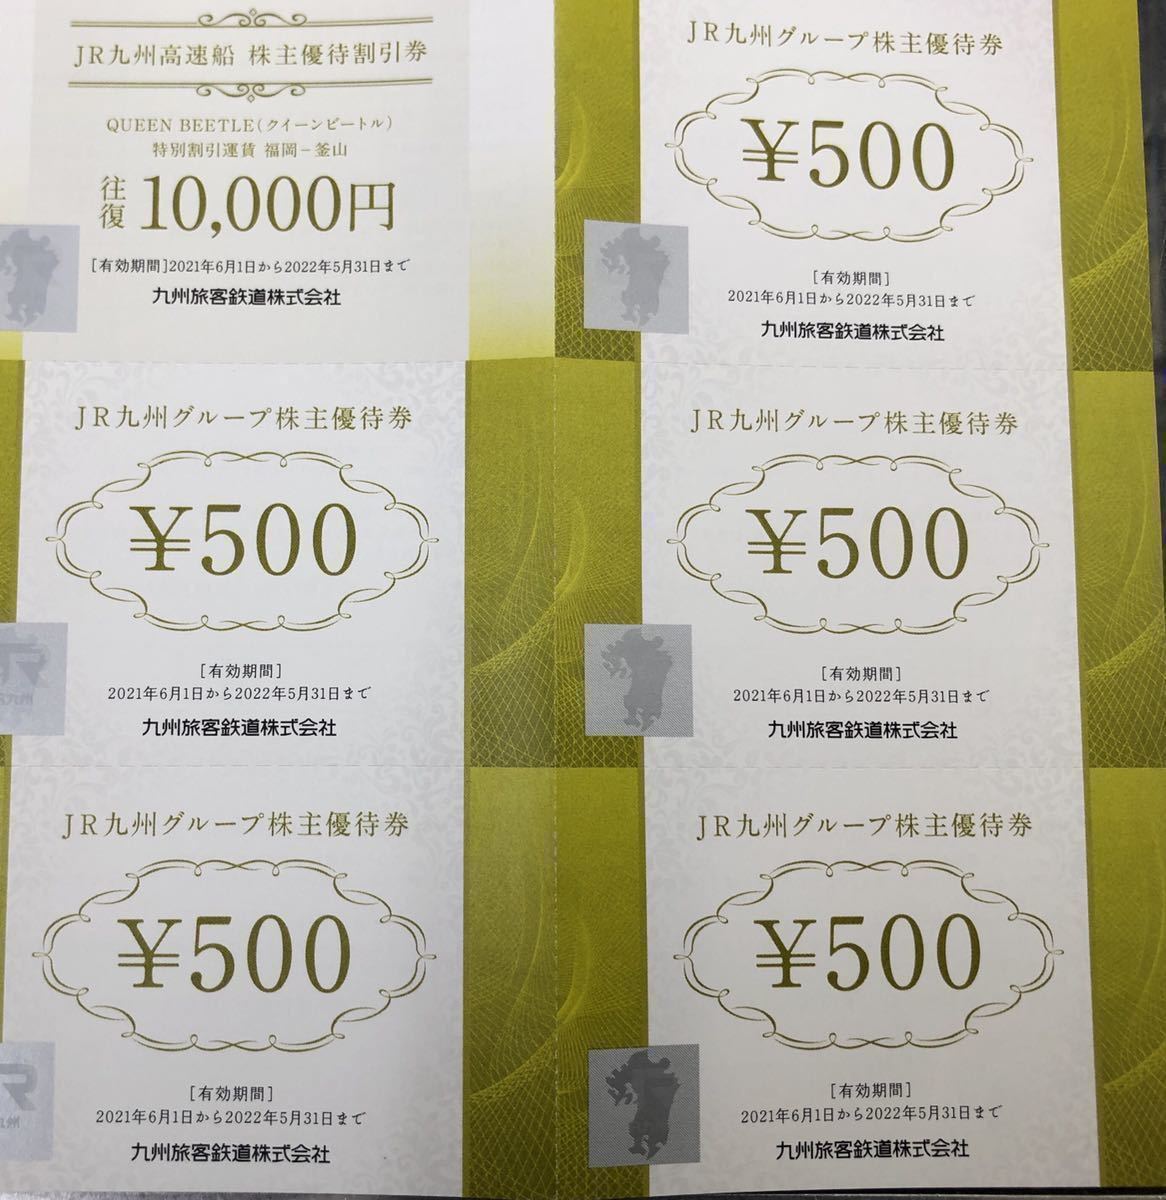 お気にいる JR九州 株主優待券 10000円分 ienomat.com.br